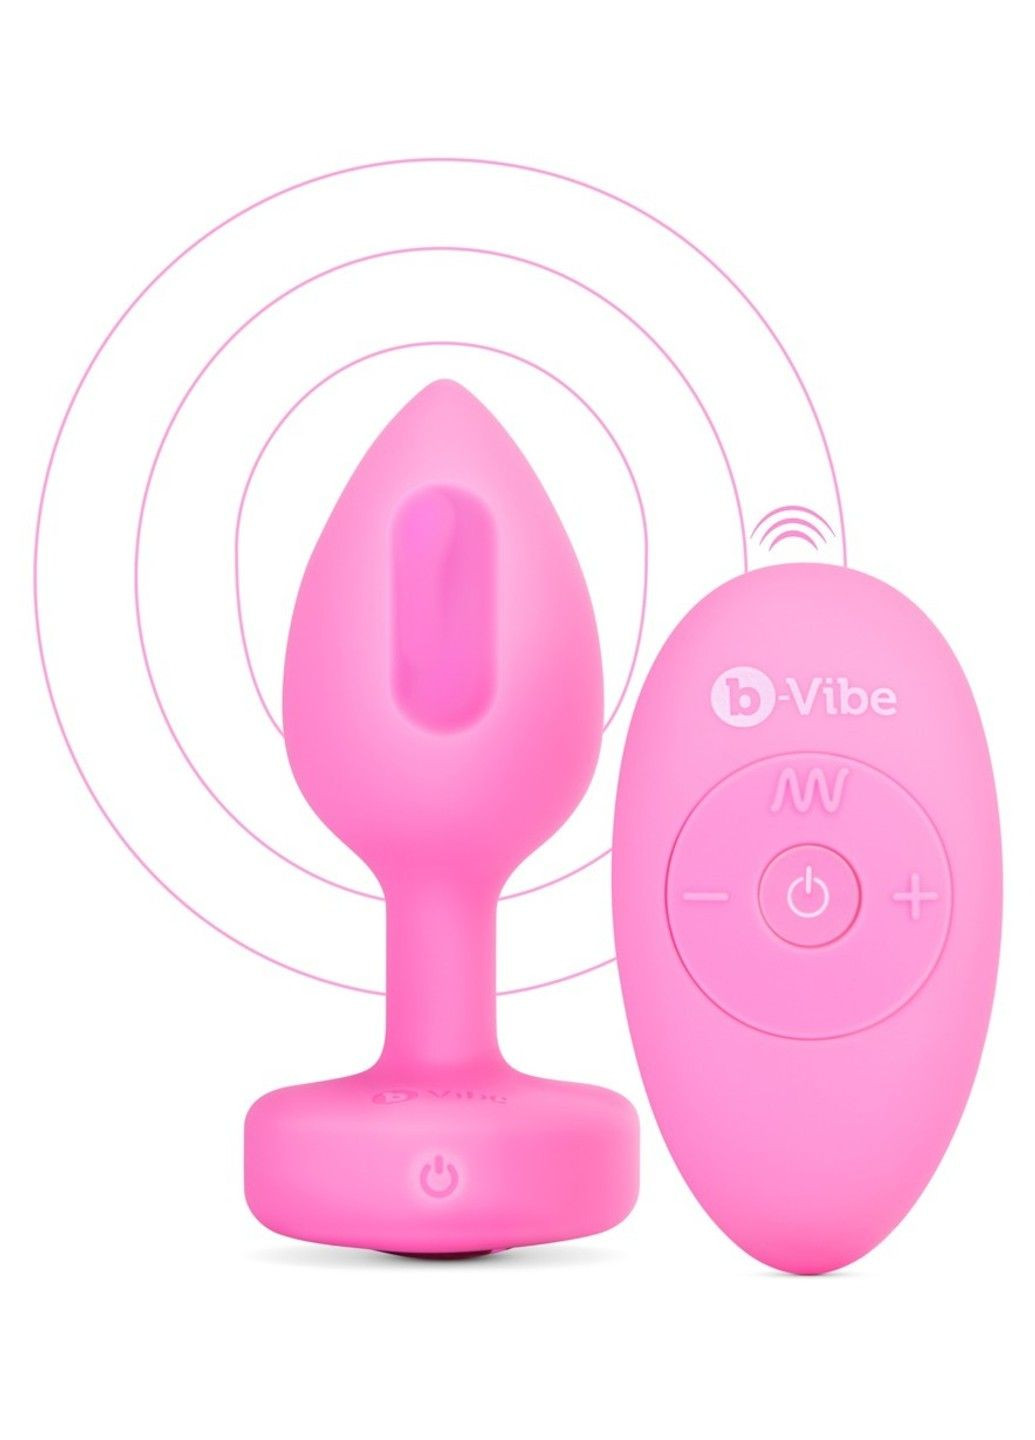 Анальная пробка с вибрацией и пультом управления Vibrating Heart Plug S/M Pink B-Vibe (292012149)